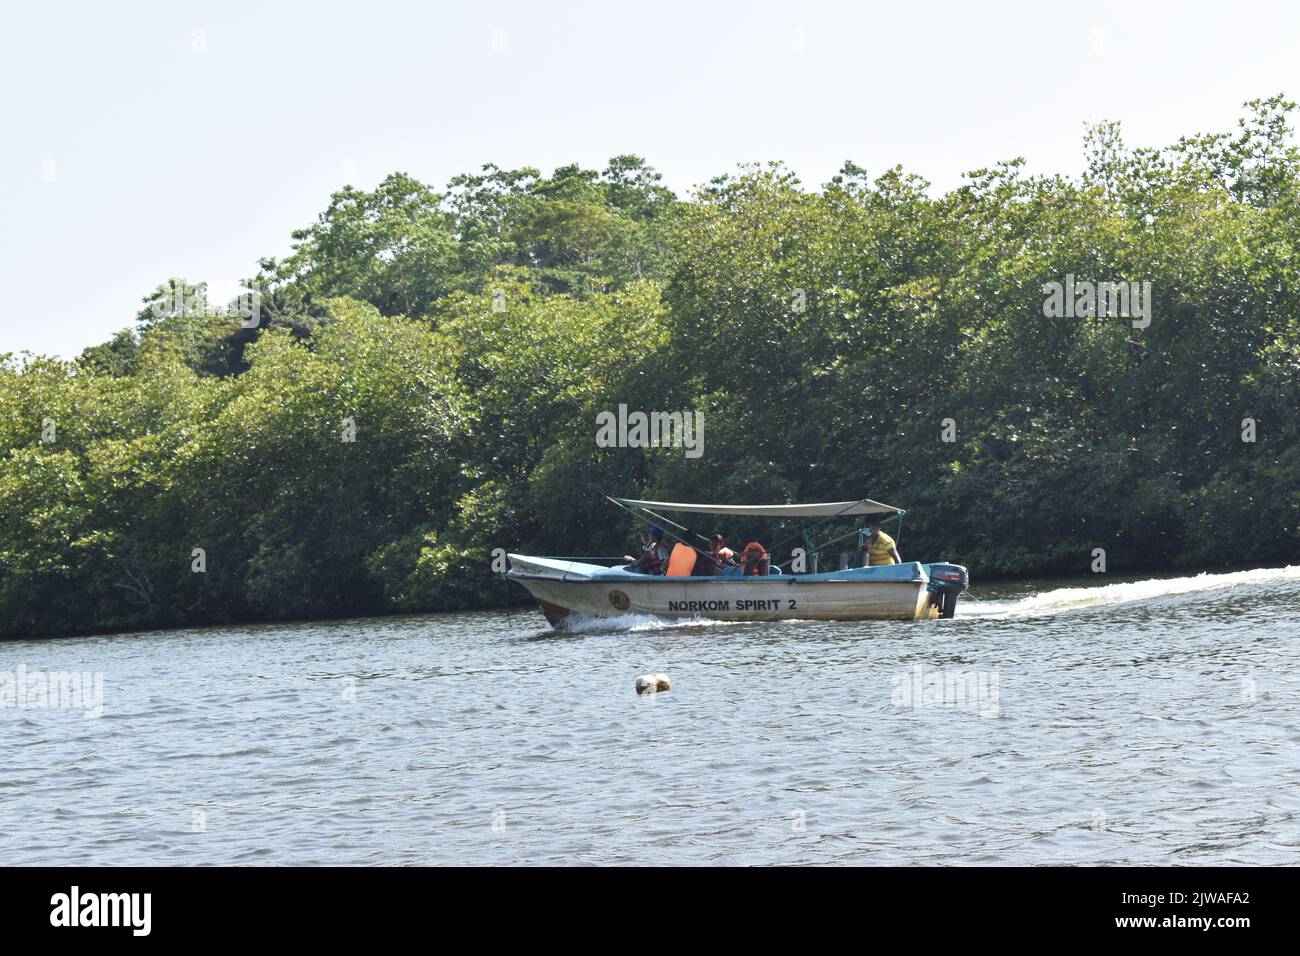 El Madu River Safari es una actividad popular que tiene que estar en la lista de cualquier respetable turista de Sri Lanka. Esta inolvidable actividad dura más de dos horas y le da al visitante la oportunidad de viajar por los pasajes secretos a través de los manglares y ver la ecología. Madu Ganga es un curso de agua menor que se origina cerca de Uragasmanhandiya en el distrito de Galle de Sri Lanka, antes de ensancharse en el lago Madu Ganga en Balapitiya. El río entonces fluye por 4,4 km más antes de drenarse en el Océano Índico. Se encuentra a 88 km al sur de Colombo y a 35 km al norte de Galle. Sri L Foto de stock